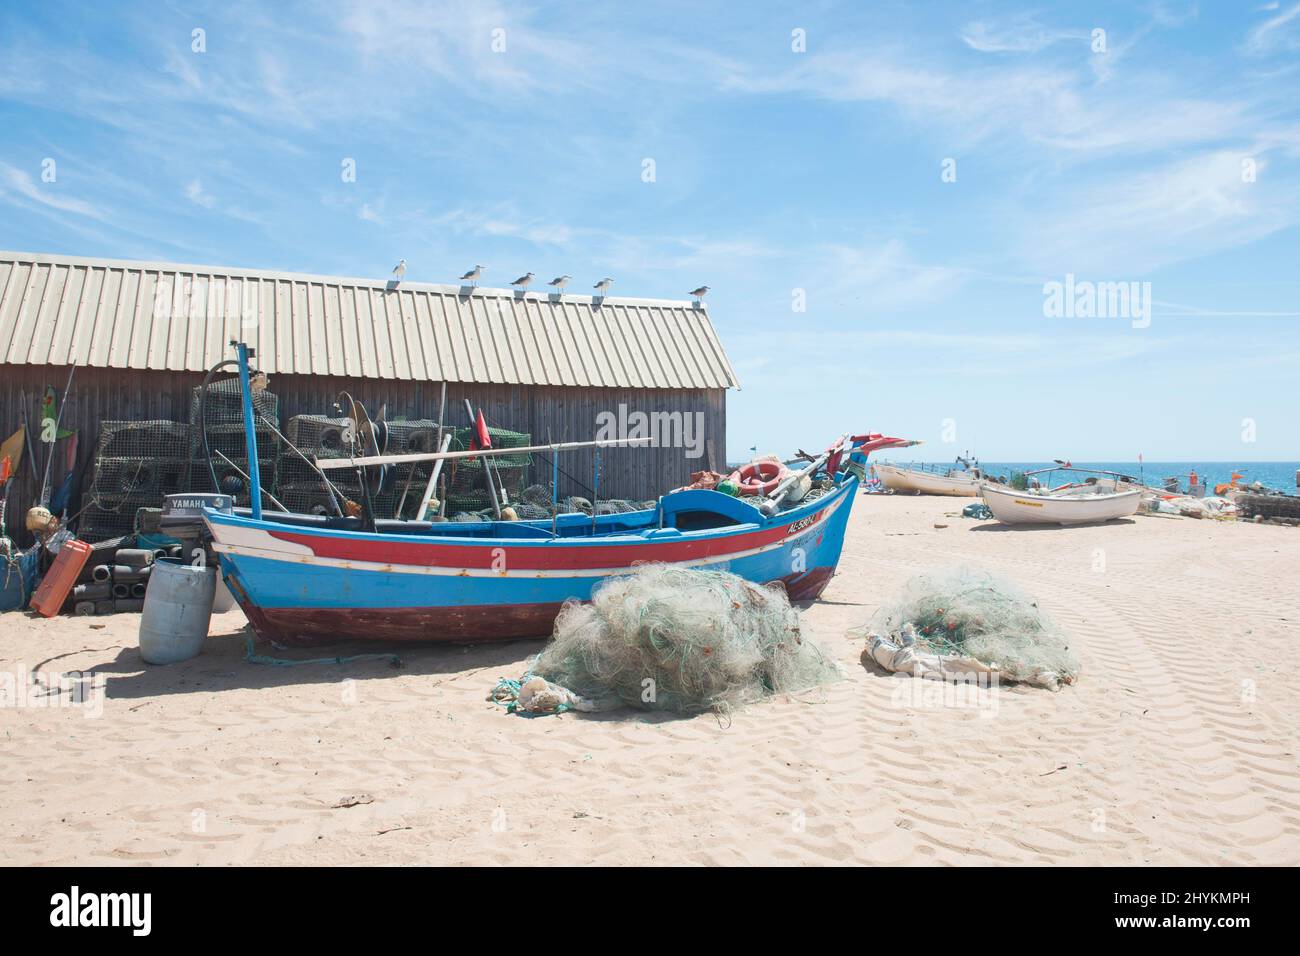 Fishing boats in Armacao de Pera, Algarve, Portugal Stock Photo